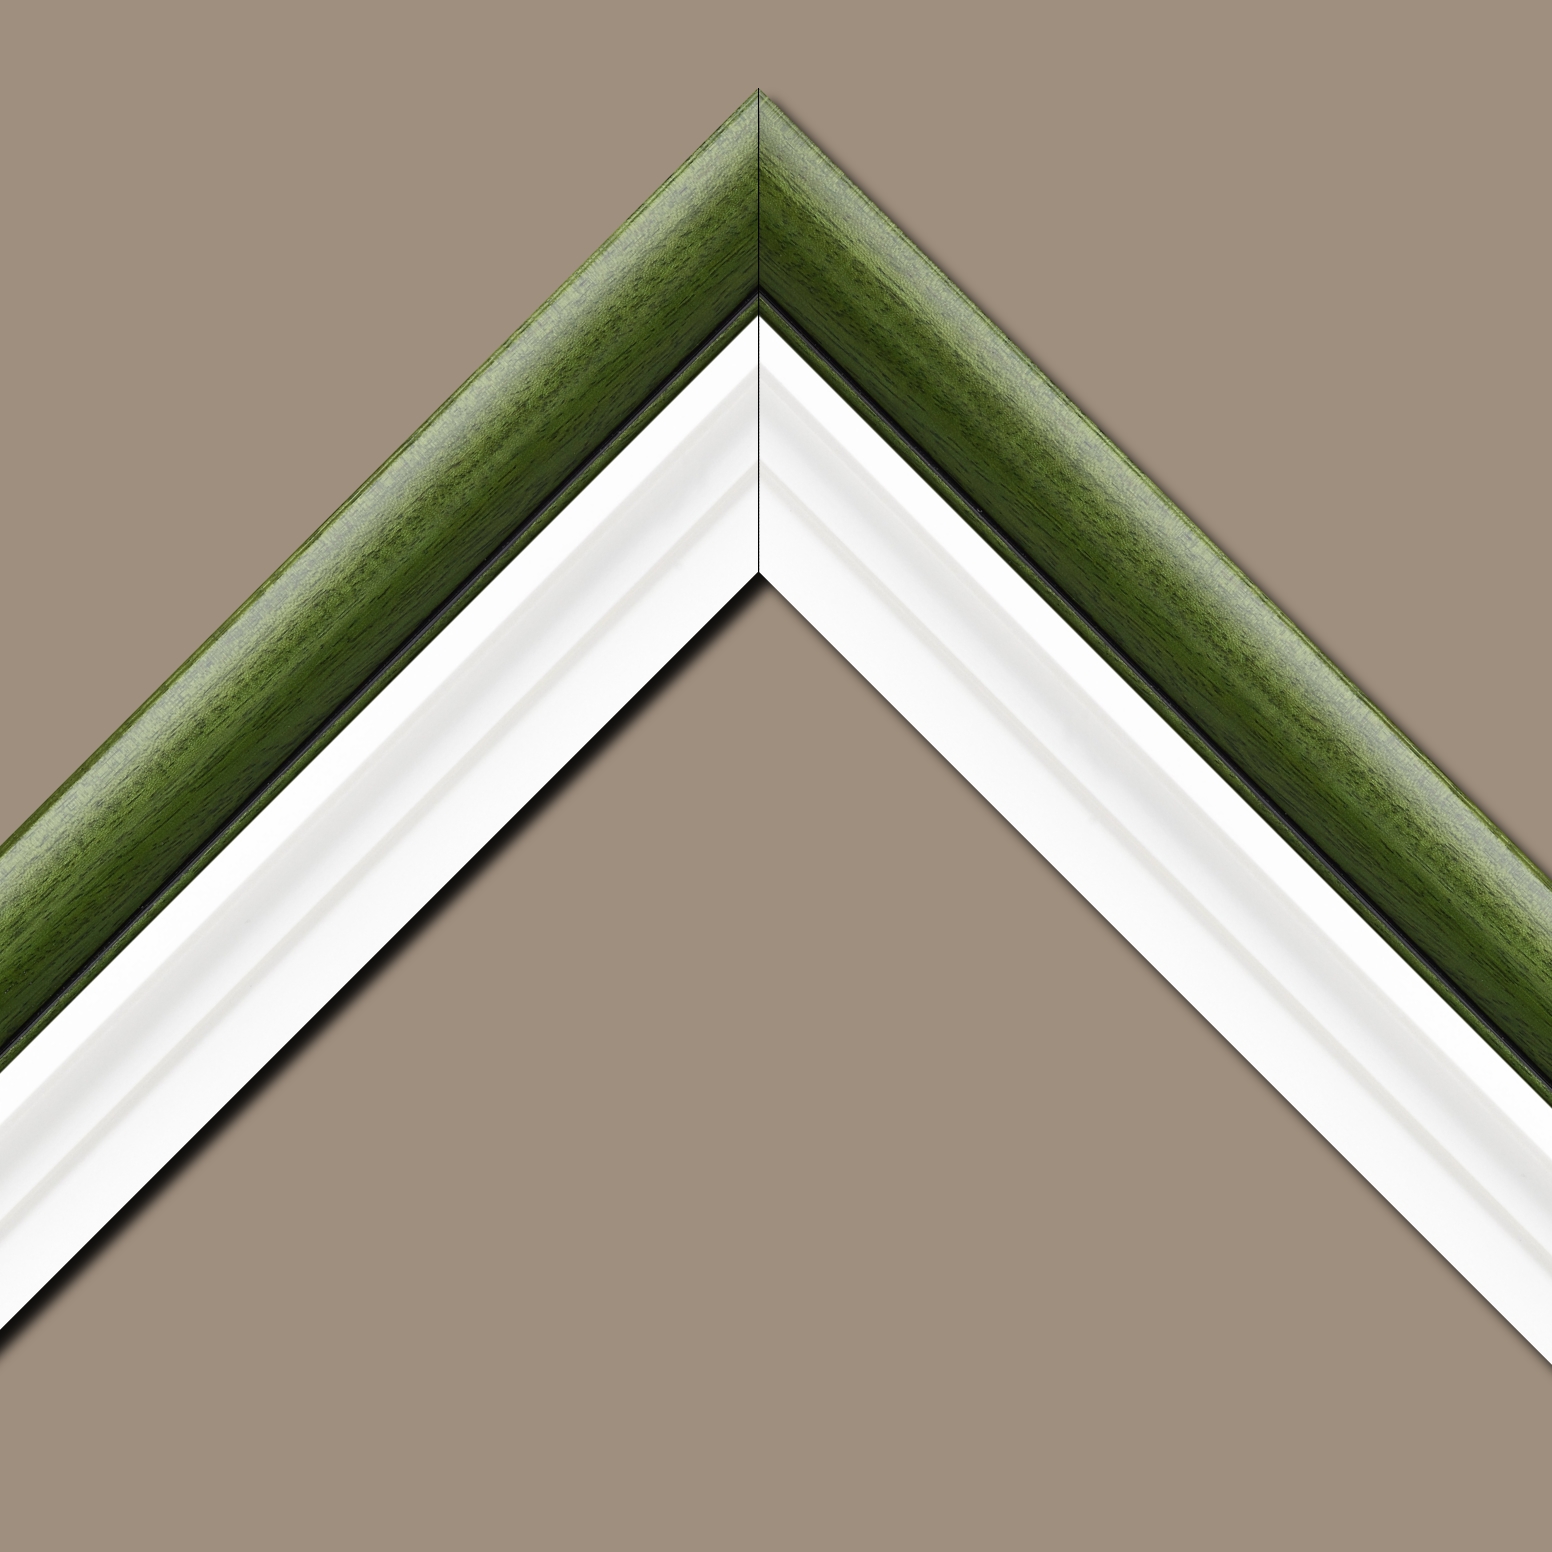 Caisse américaine pour peintures  americaine bois blanc vert — 100 x 65